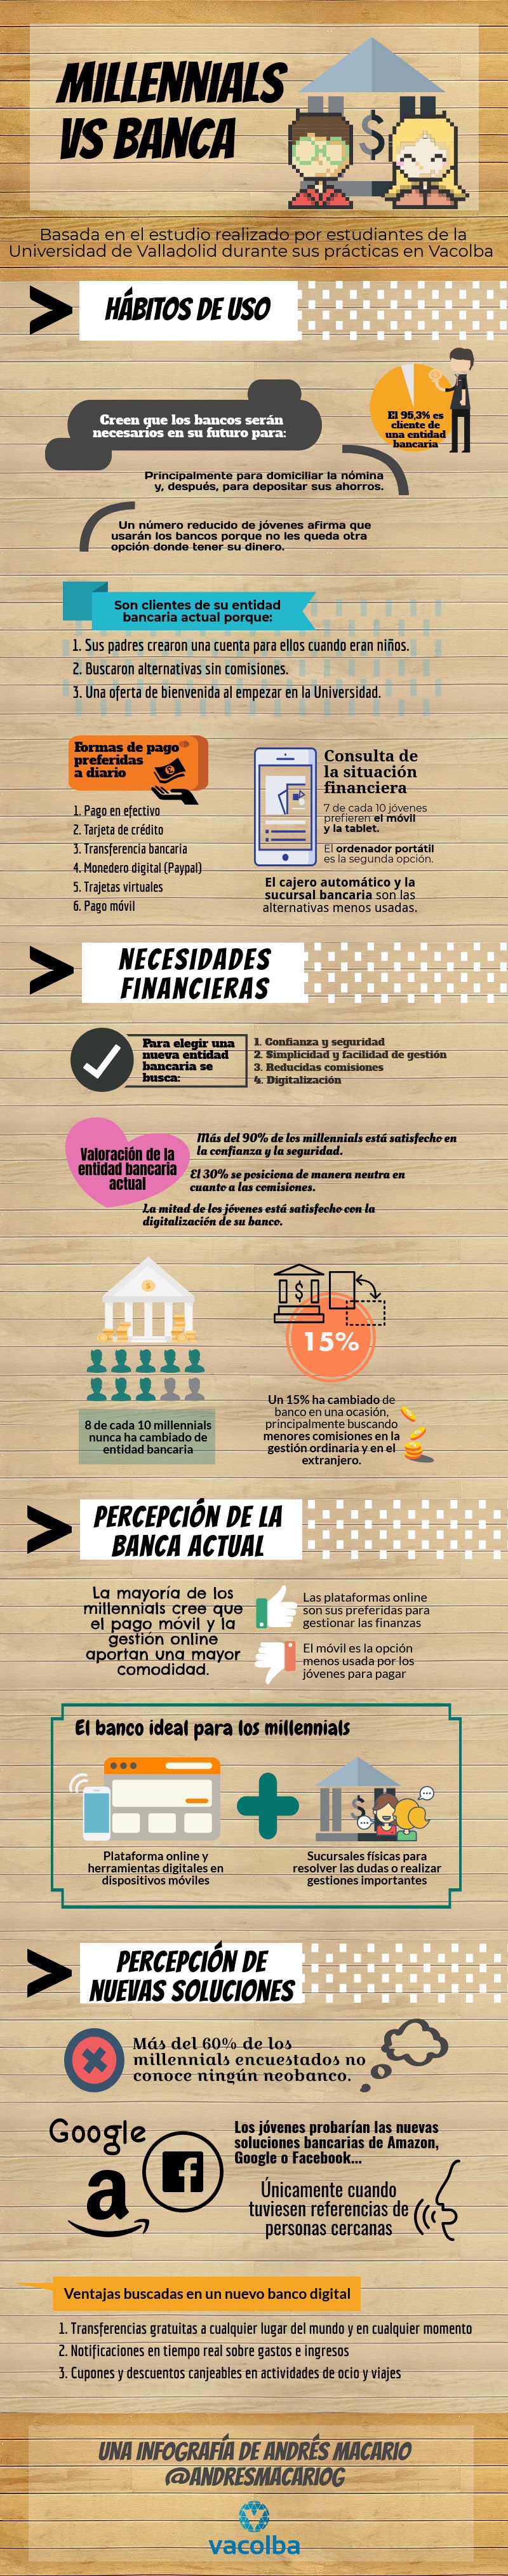 Millennials vs Banca - infografía de Andrés Macario (Vacolba)